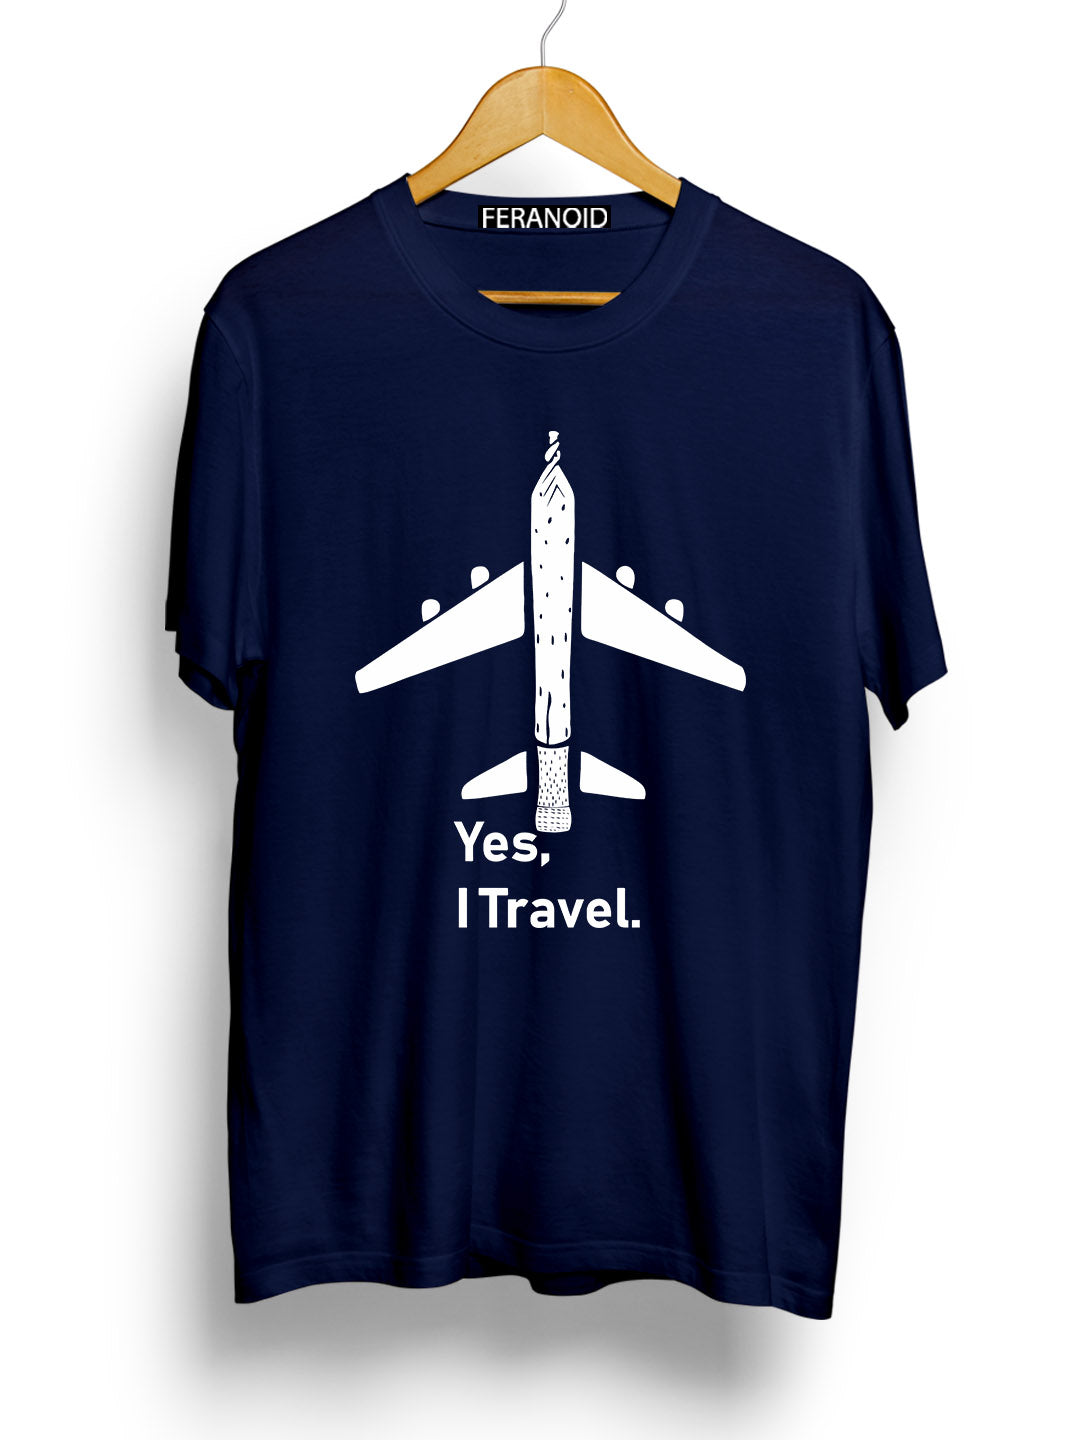 Yes I Travel Blue T-Shirt